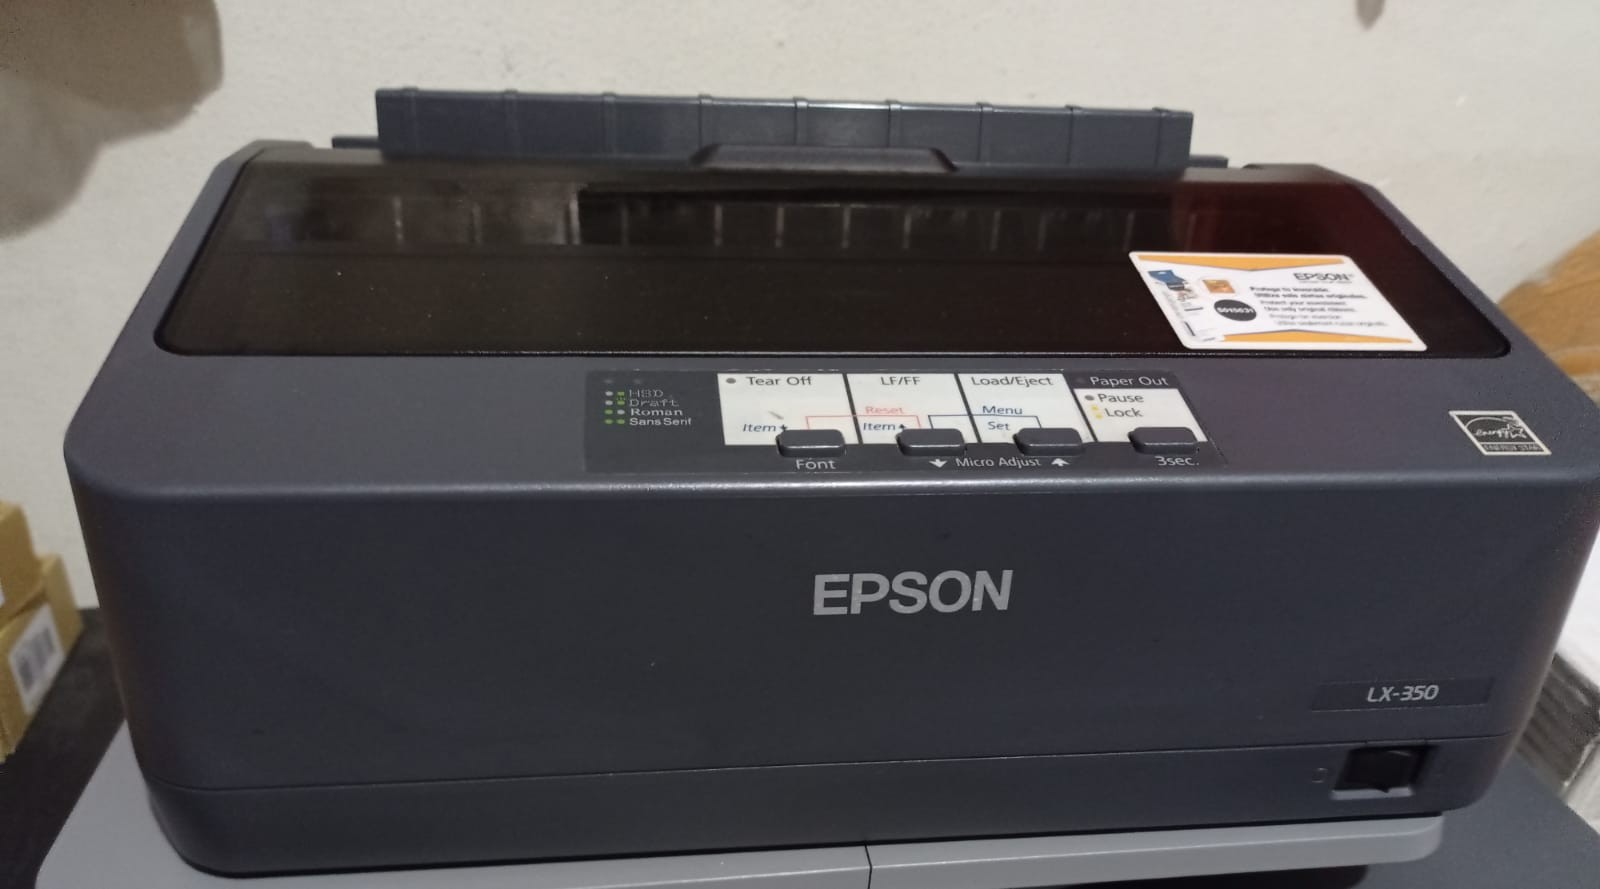 impresoras y scanners - Impresora EPSON LX-350 matrixial, puerto paralelo y USB, papel normal y continuo